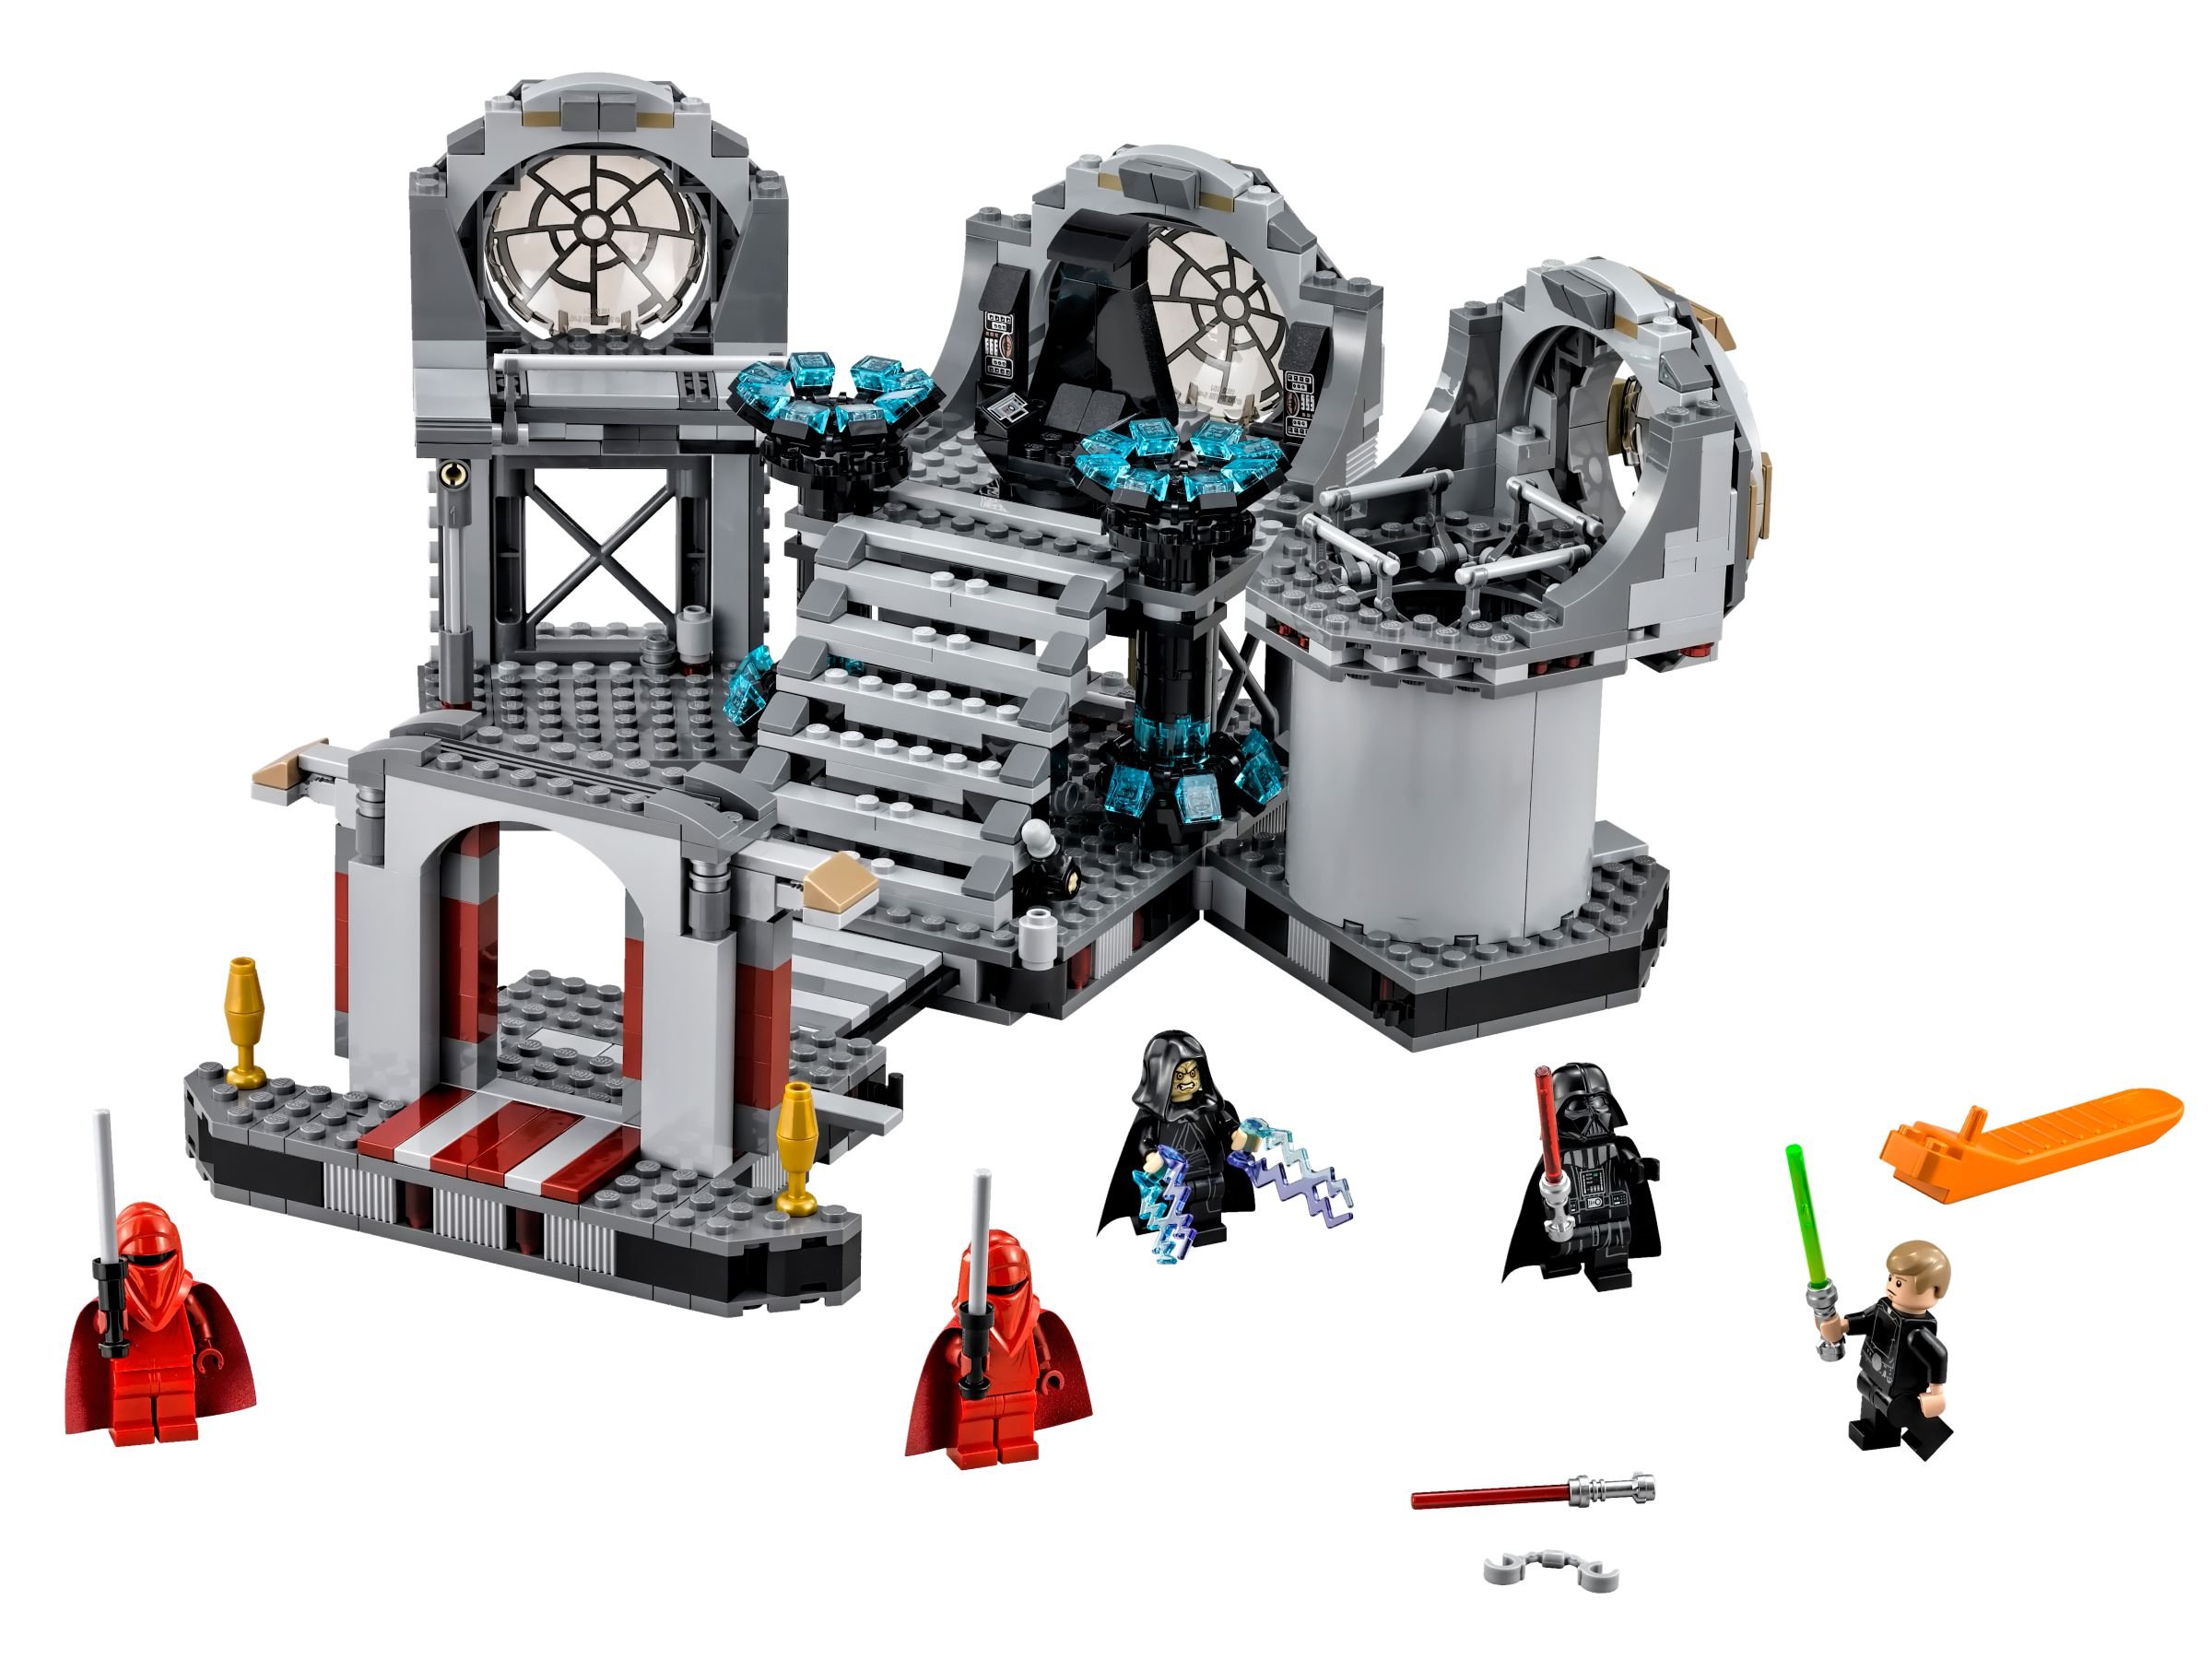 LEGO Star Wars 75093 Death Star™ Final Duel